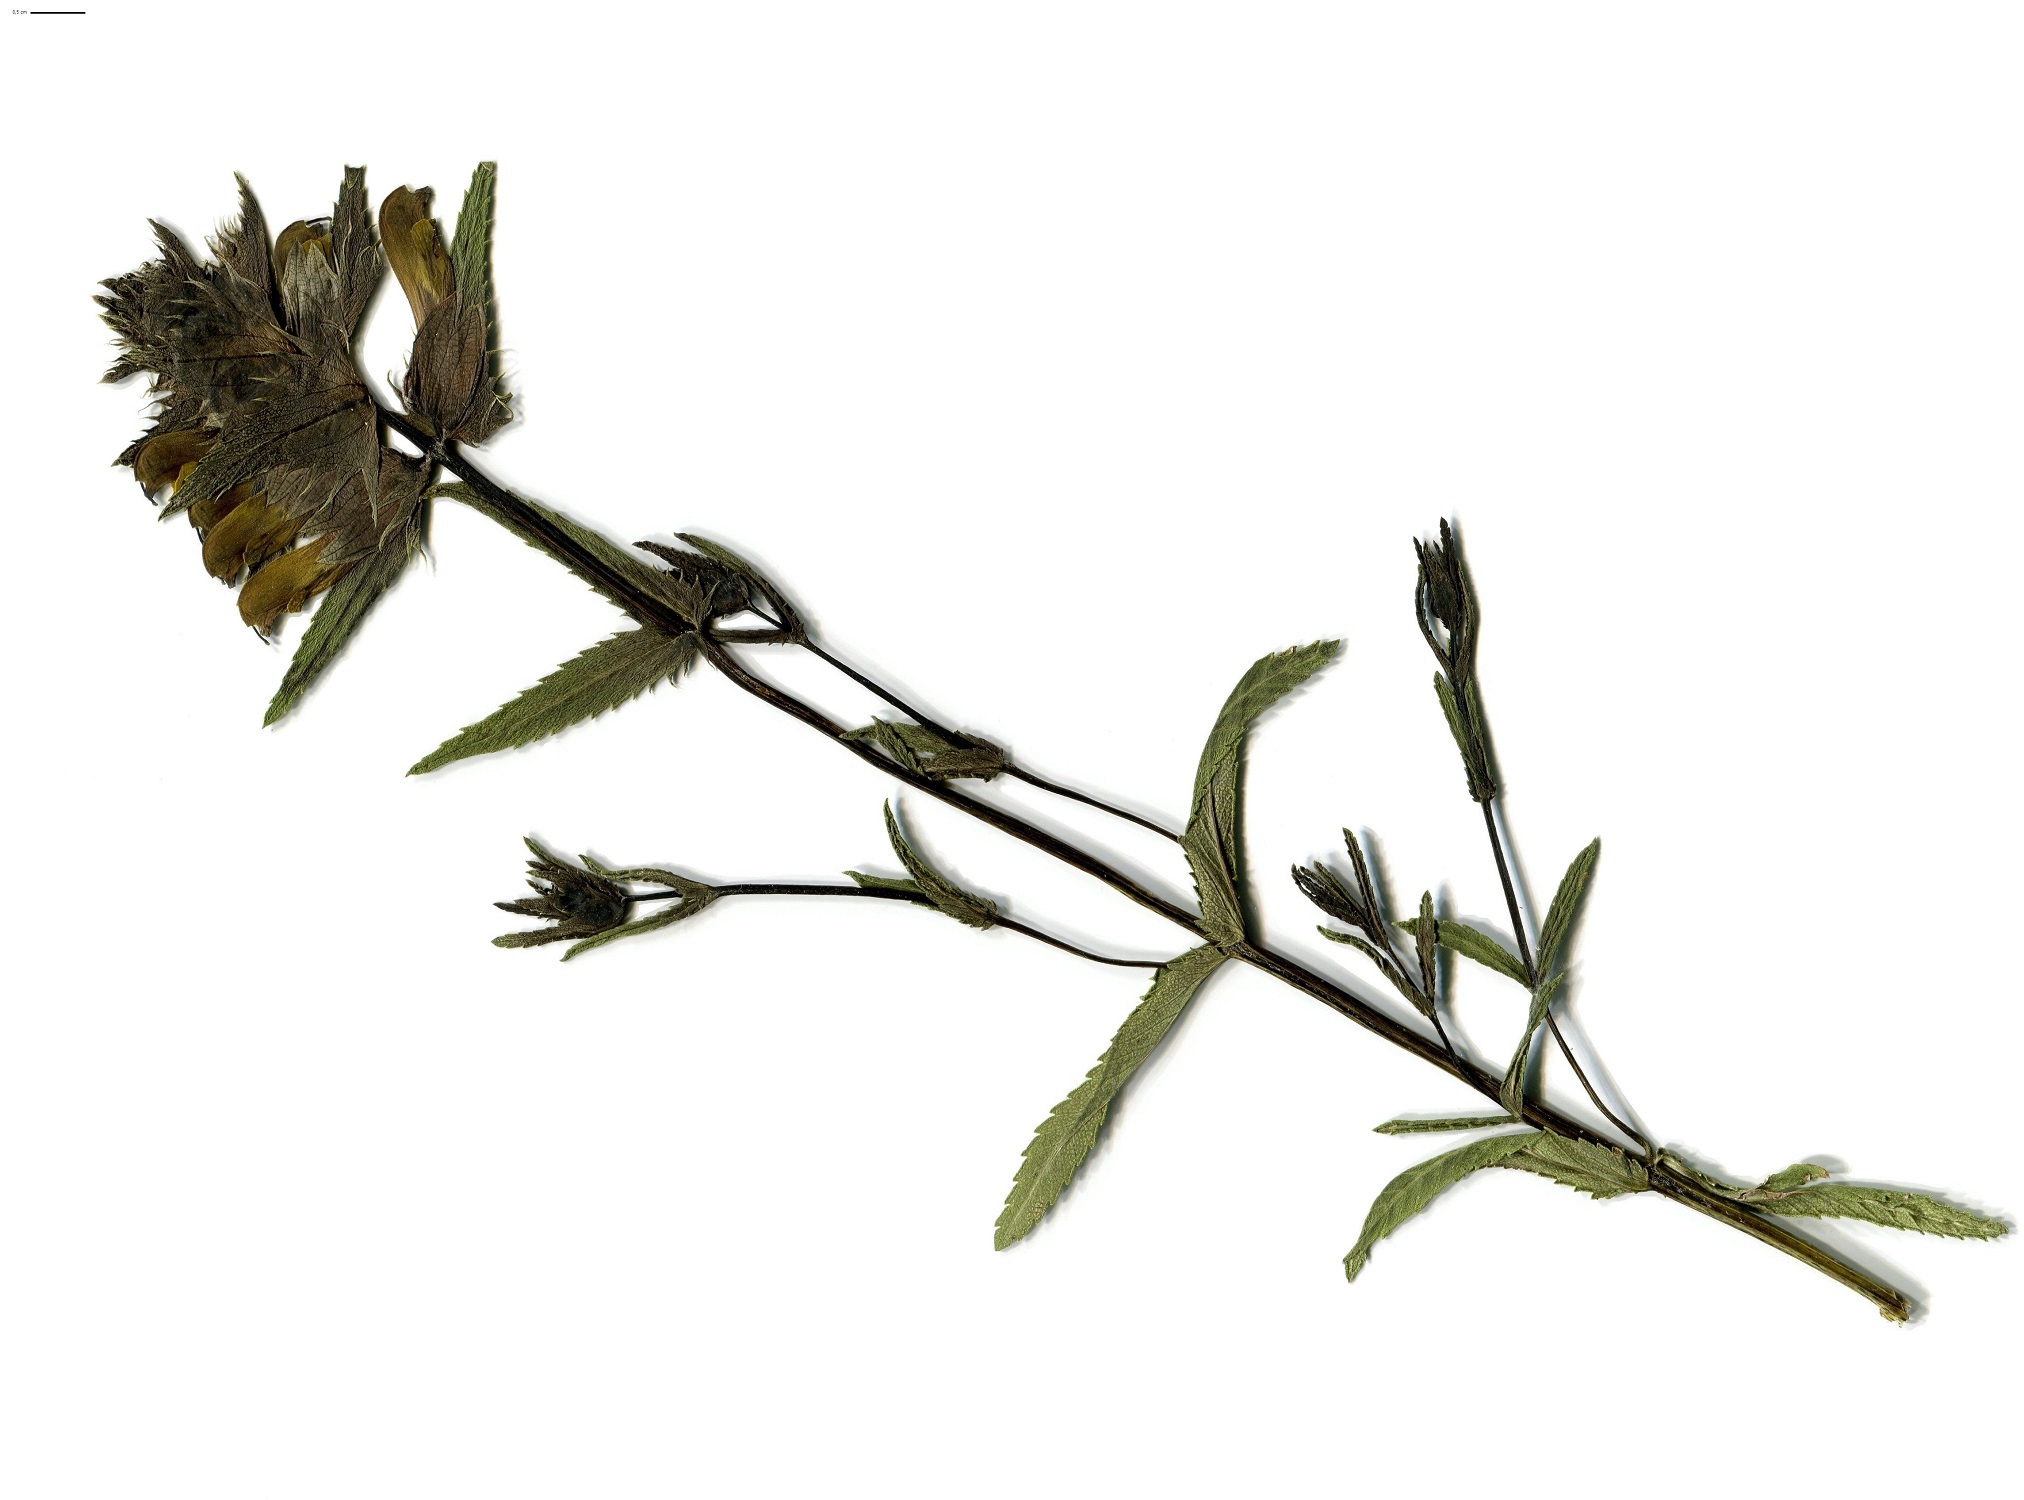 Rhinanthus angustifolius subsp. angustifolius (Orobanchaceae)